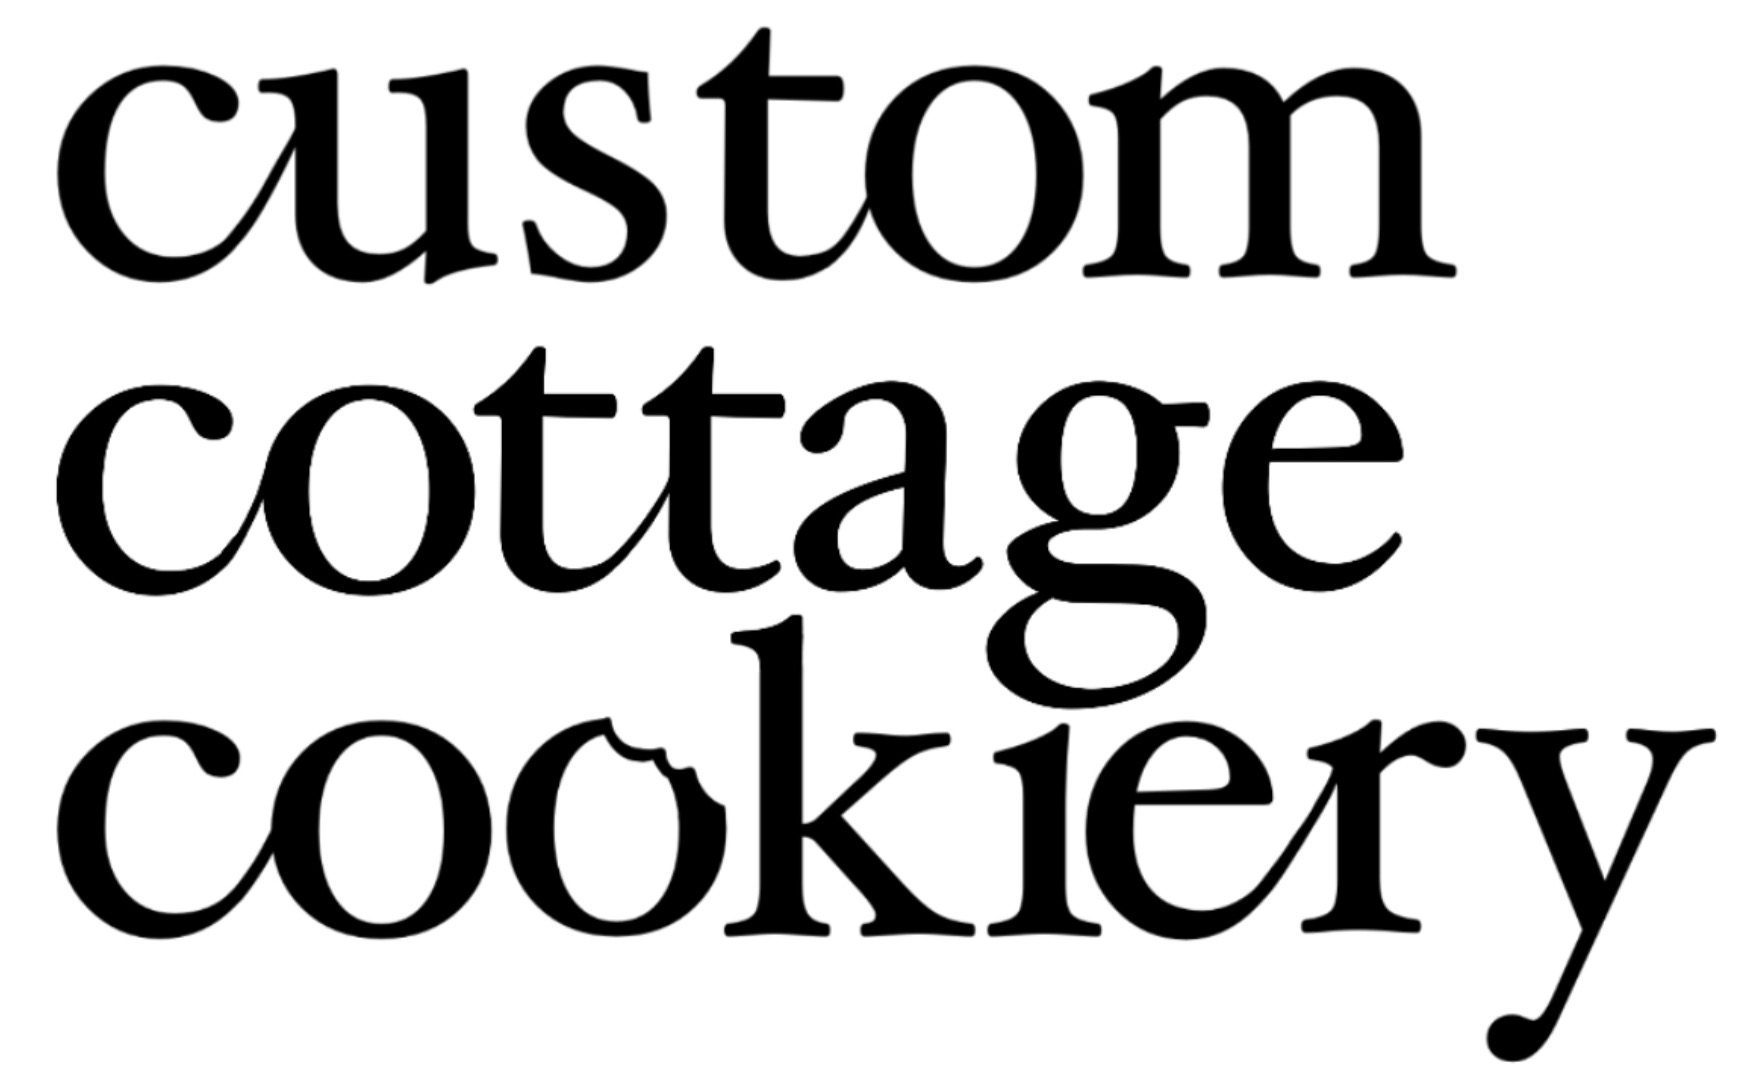 Custom Cottage Cookiery